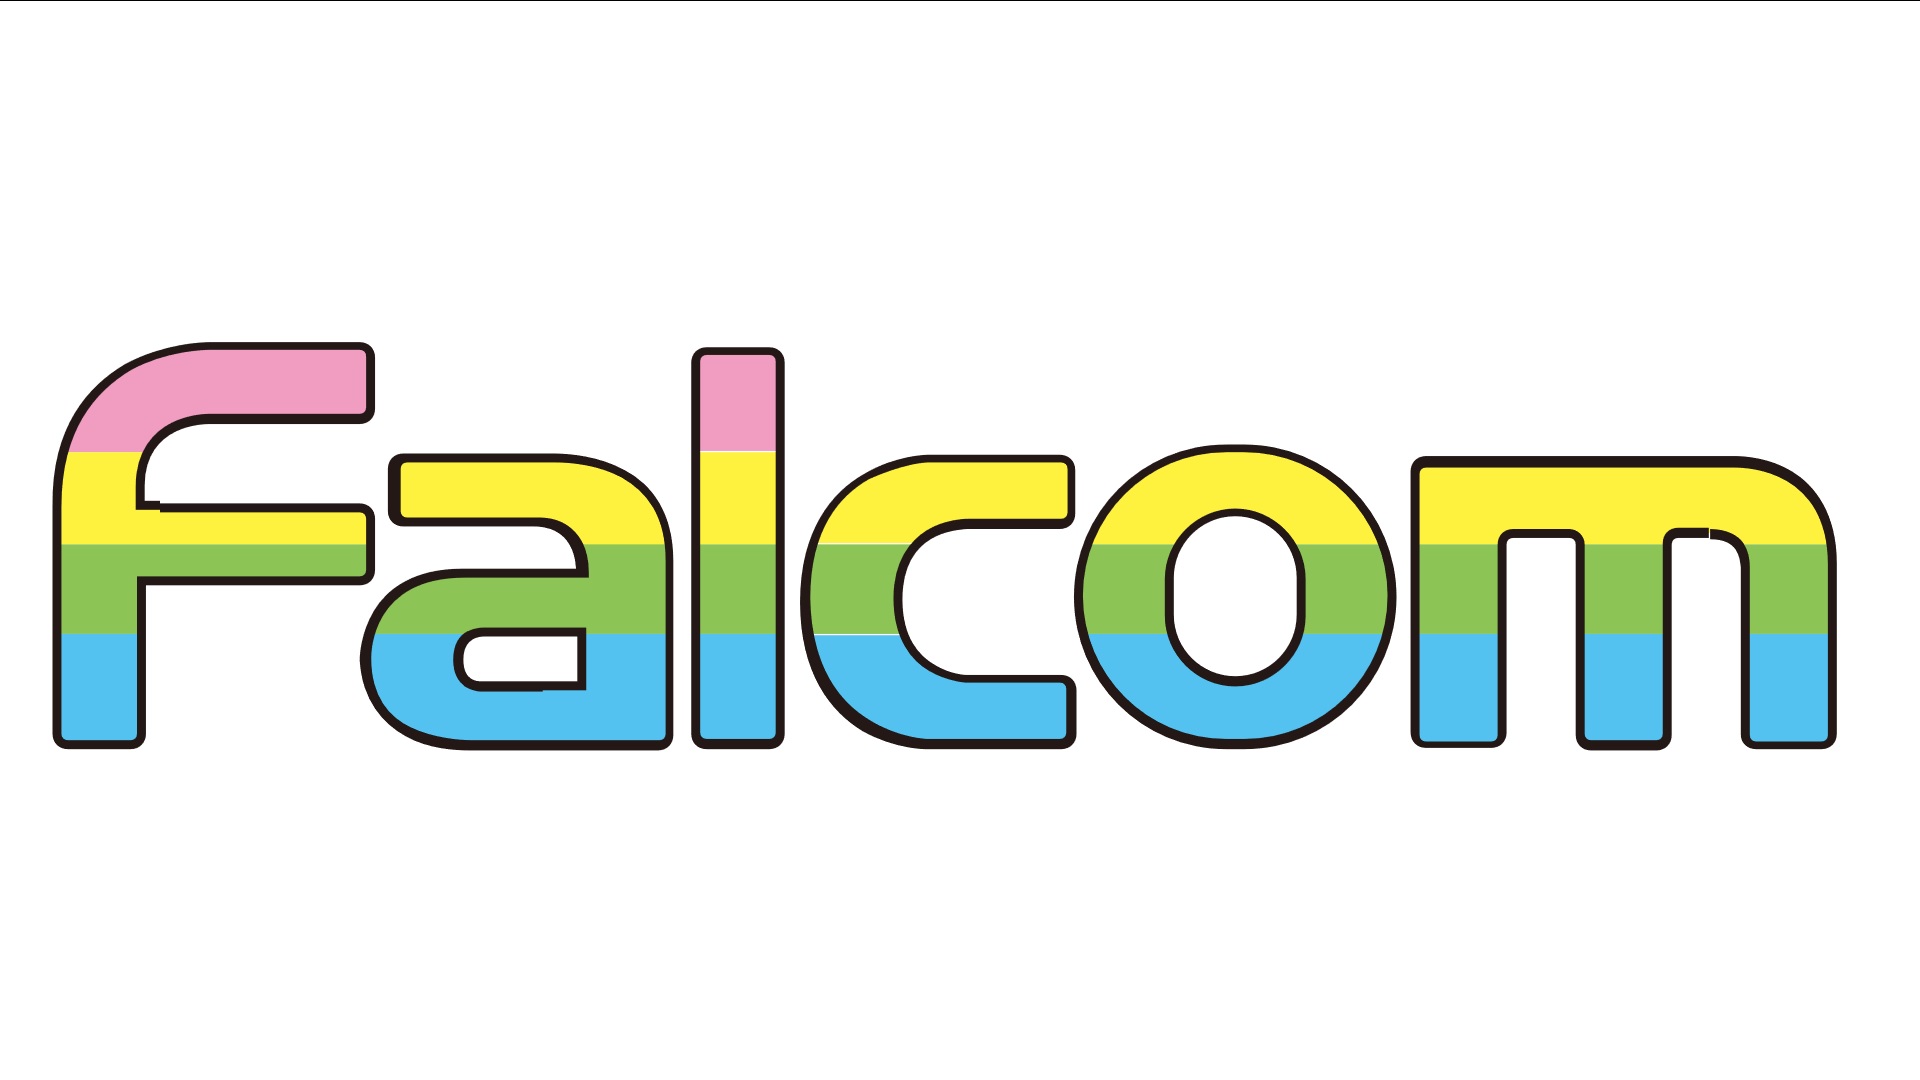 #Falcom möchte künftig mehr Titel veröffentlichen und gibt Ausblick auf anstehende Projekte